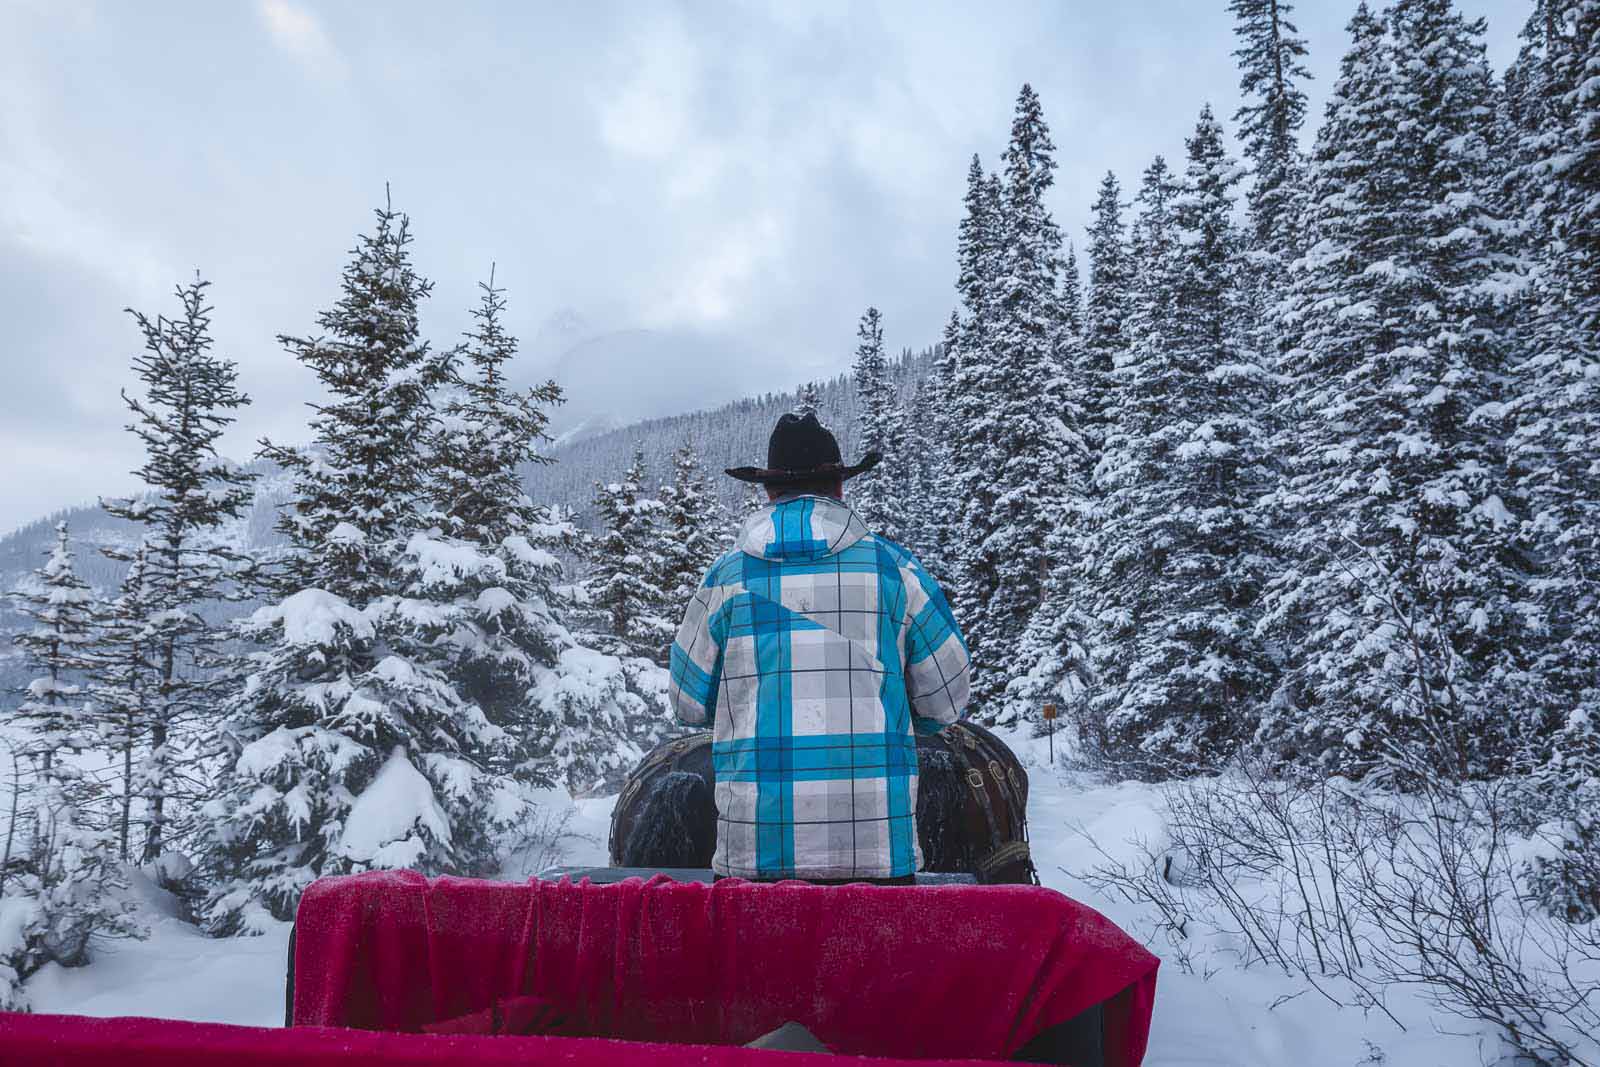 winter in alberta sleigh rides